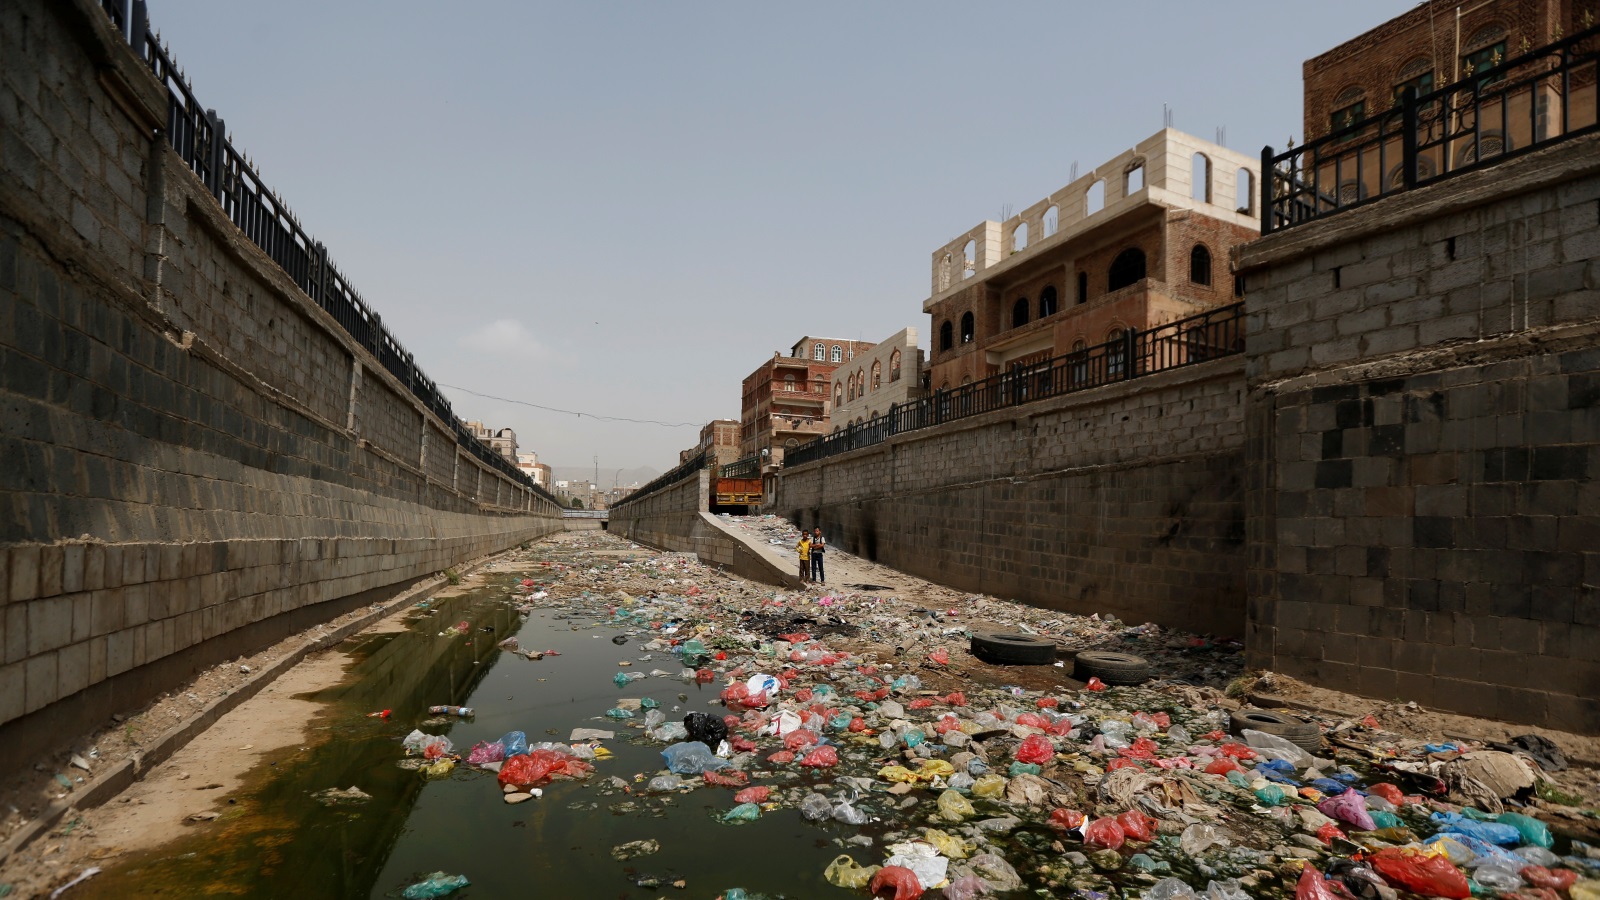 قنوات الصرف الصحي المكشوفة في صنعاء تتسبب في انتشار الأمراض والأوبئة مثل الكوليرا (رويترز)